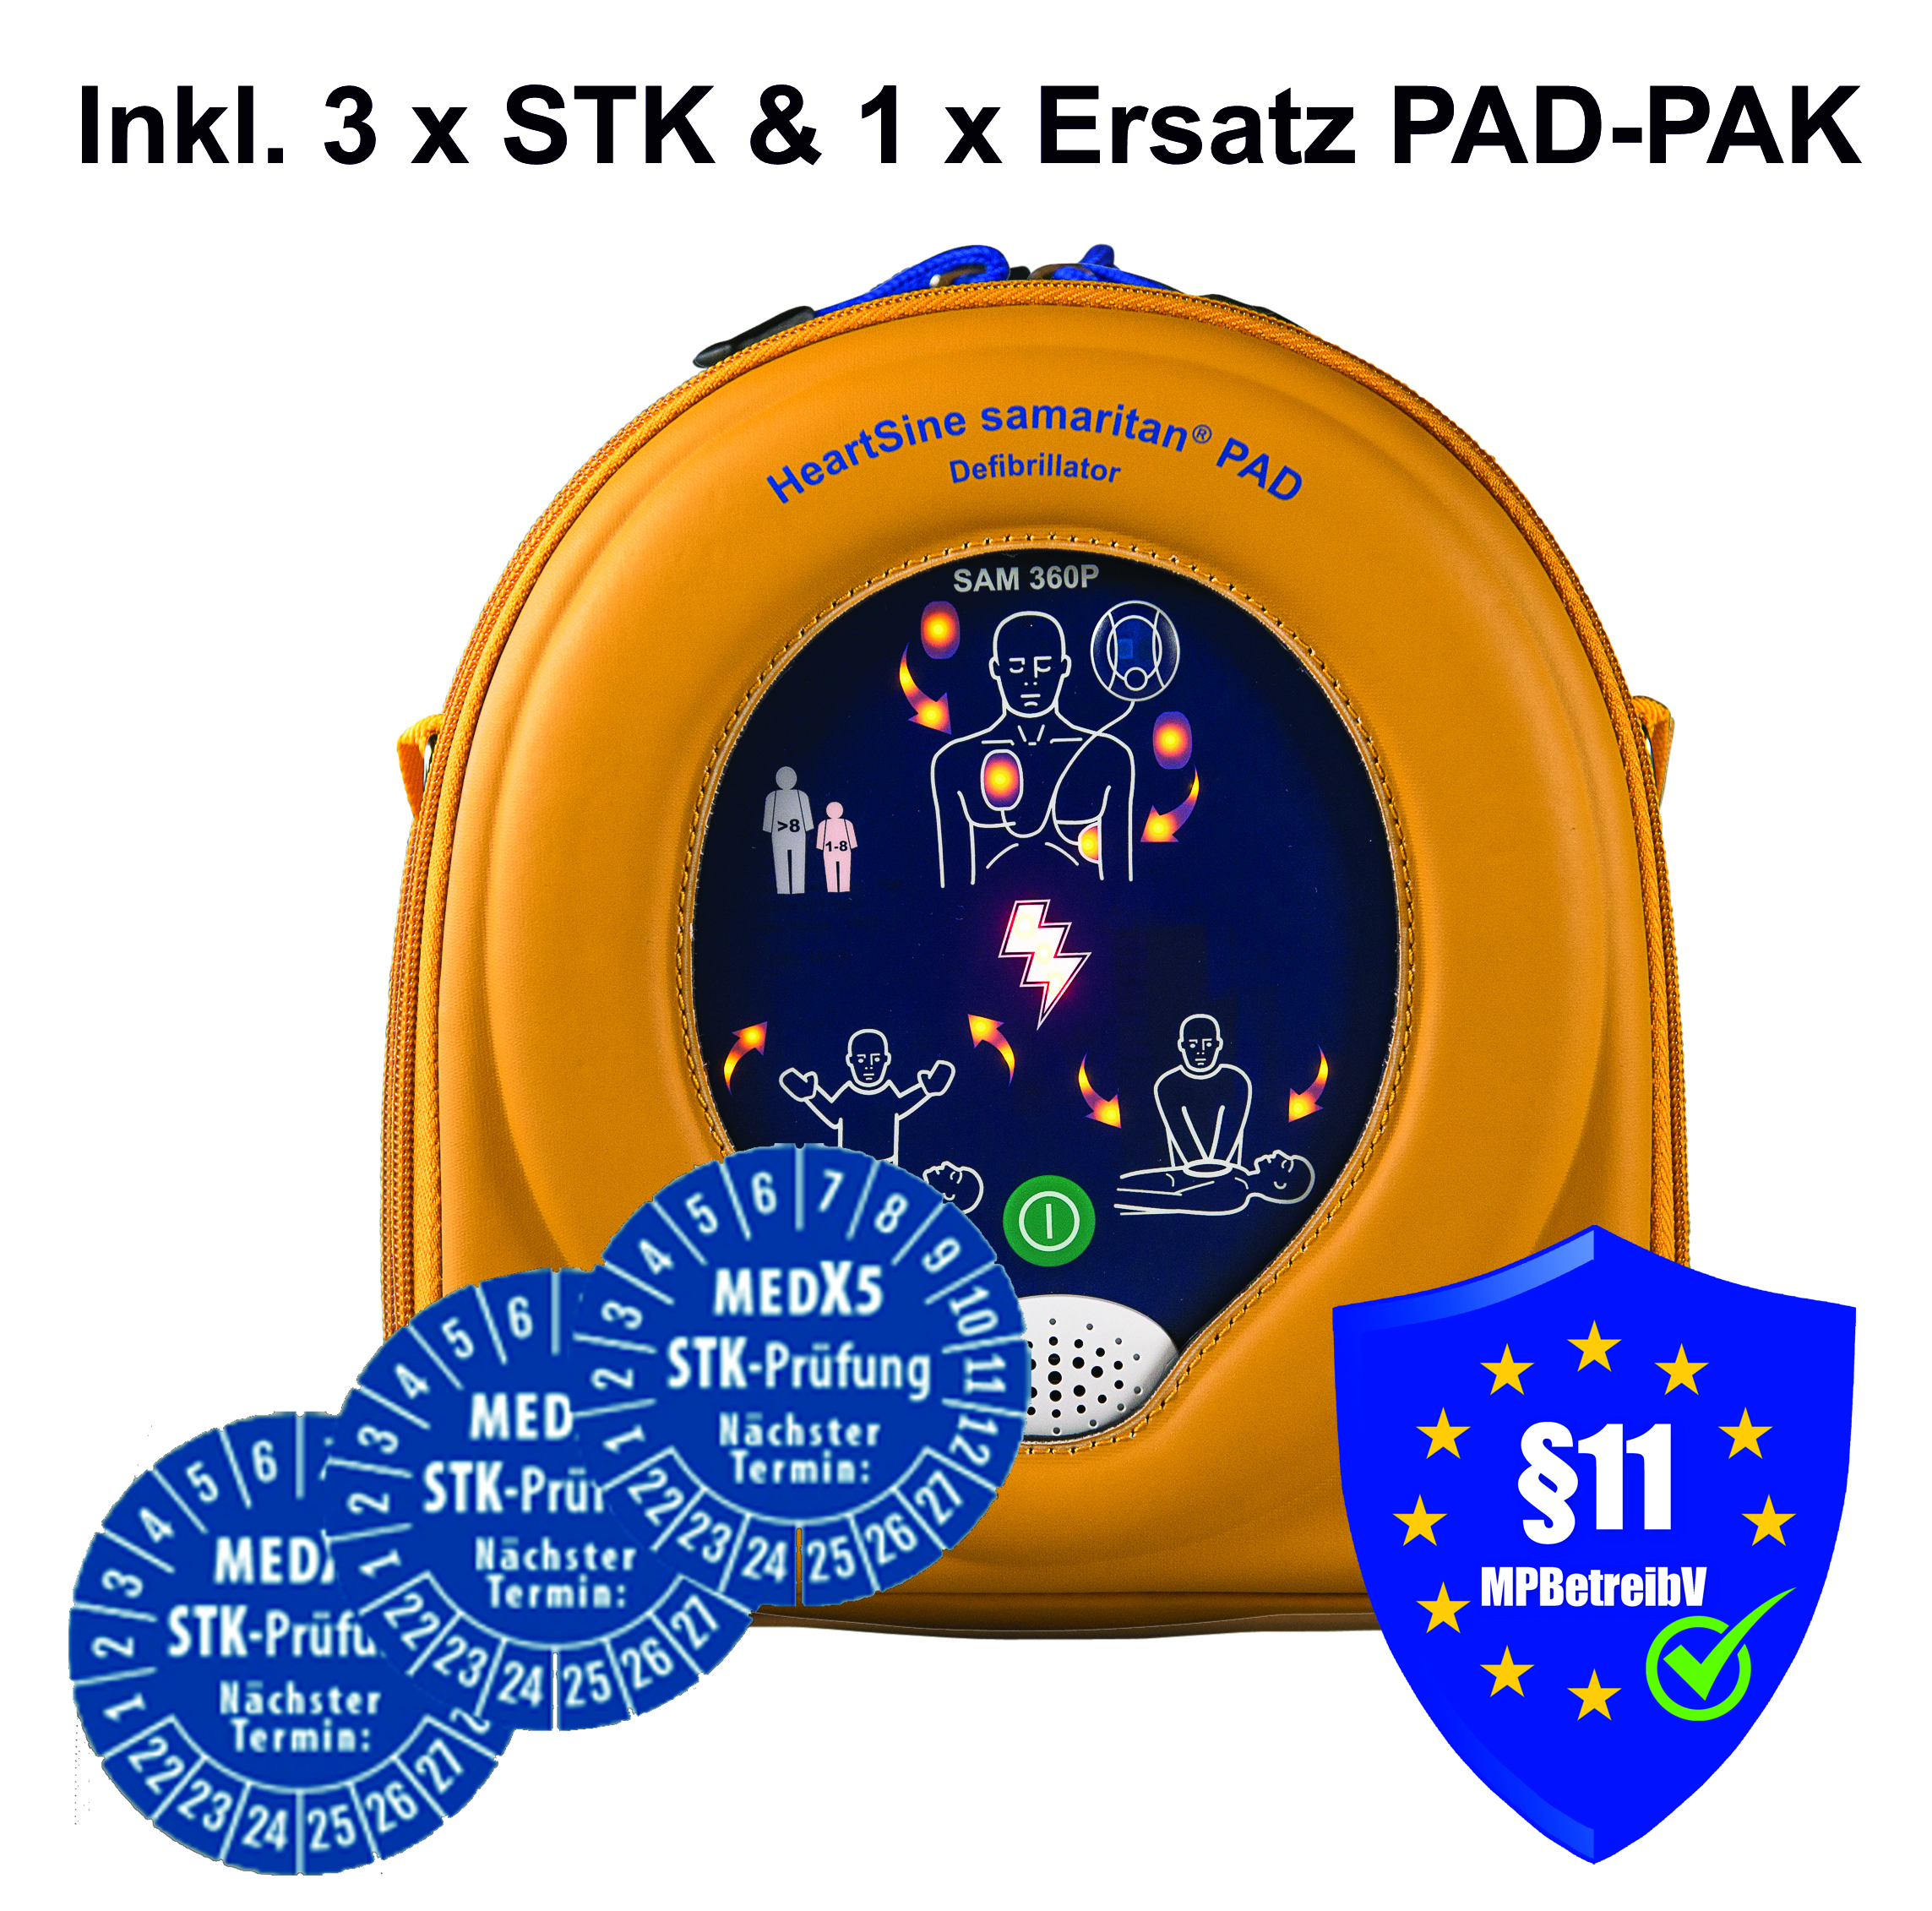 HeartSine samaritan® PAD 360P Defibrillator/AED, inkl. 3 St. STK-Prüfungen und 1. St. PAD-PAK innerhalb der Garantiezeit